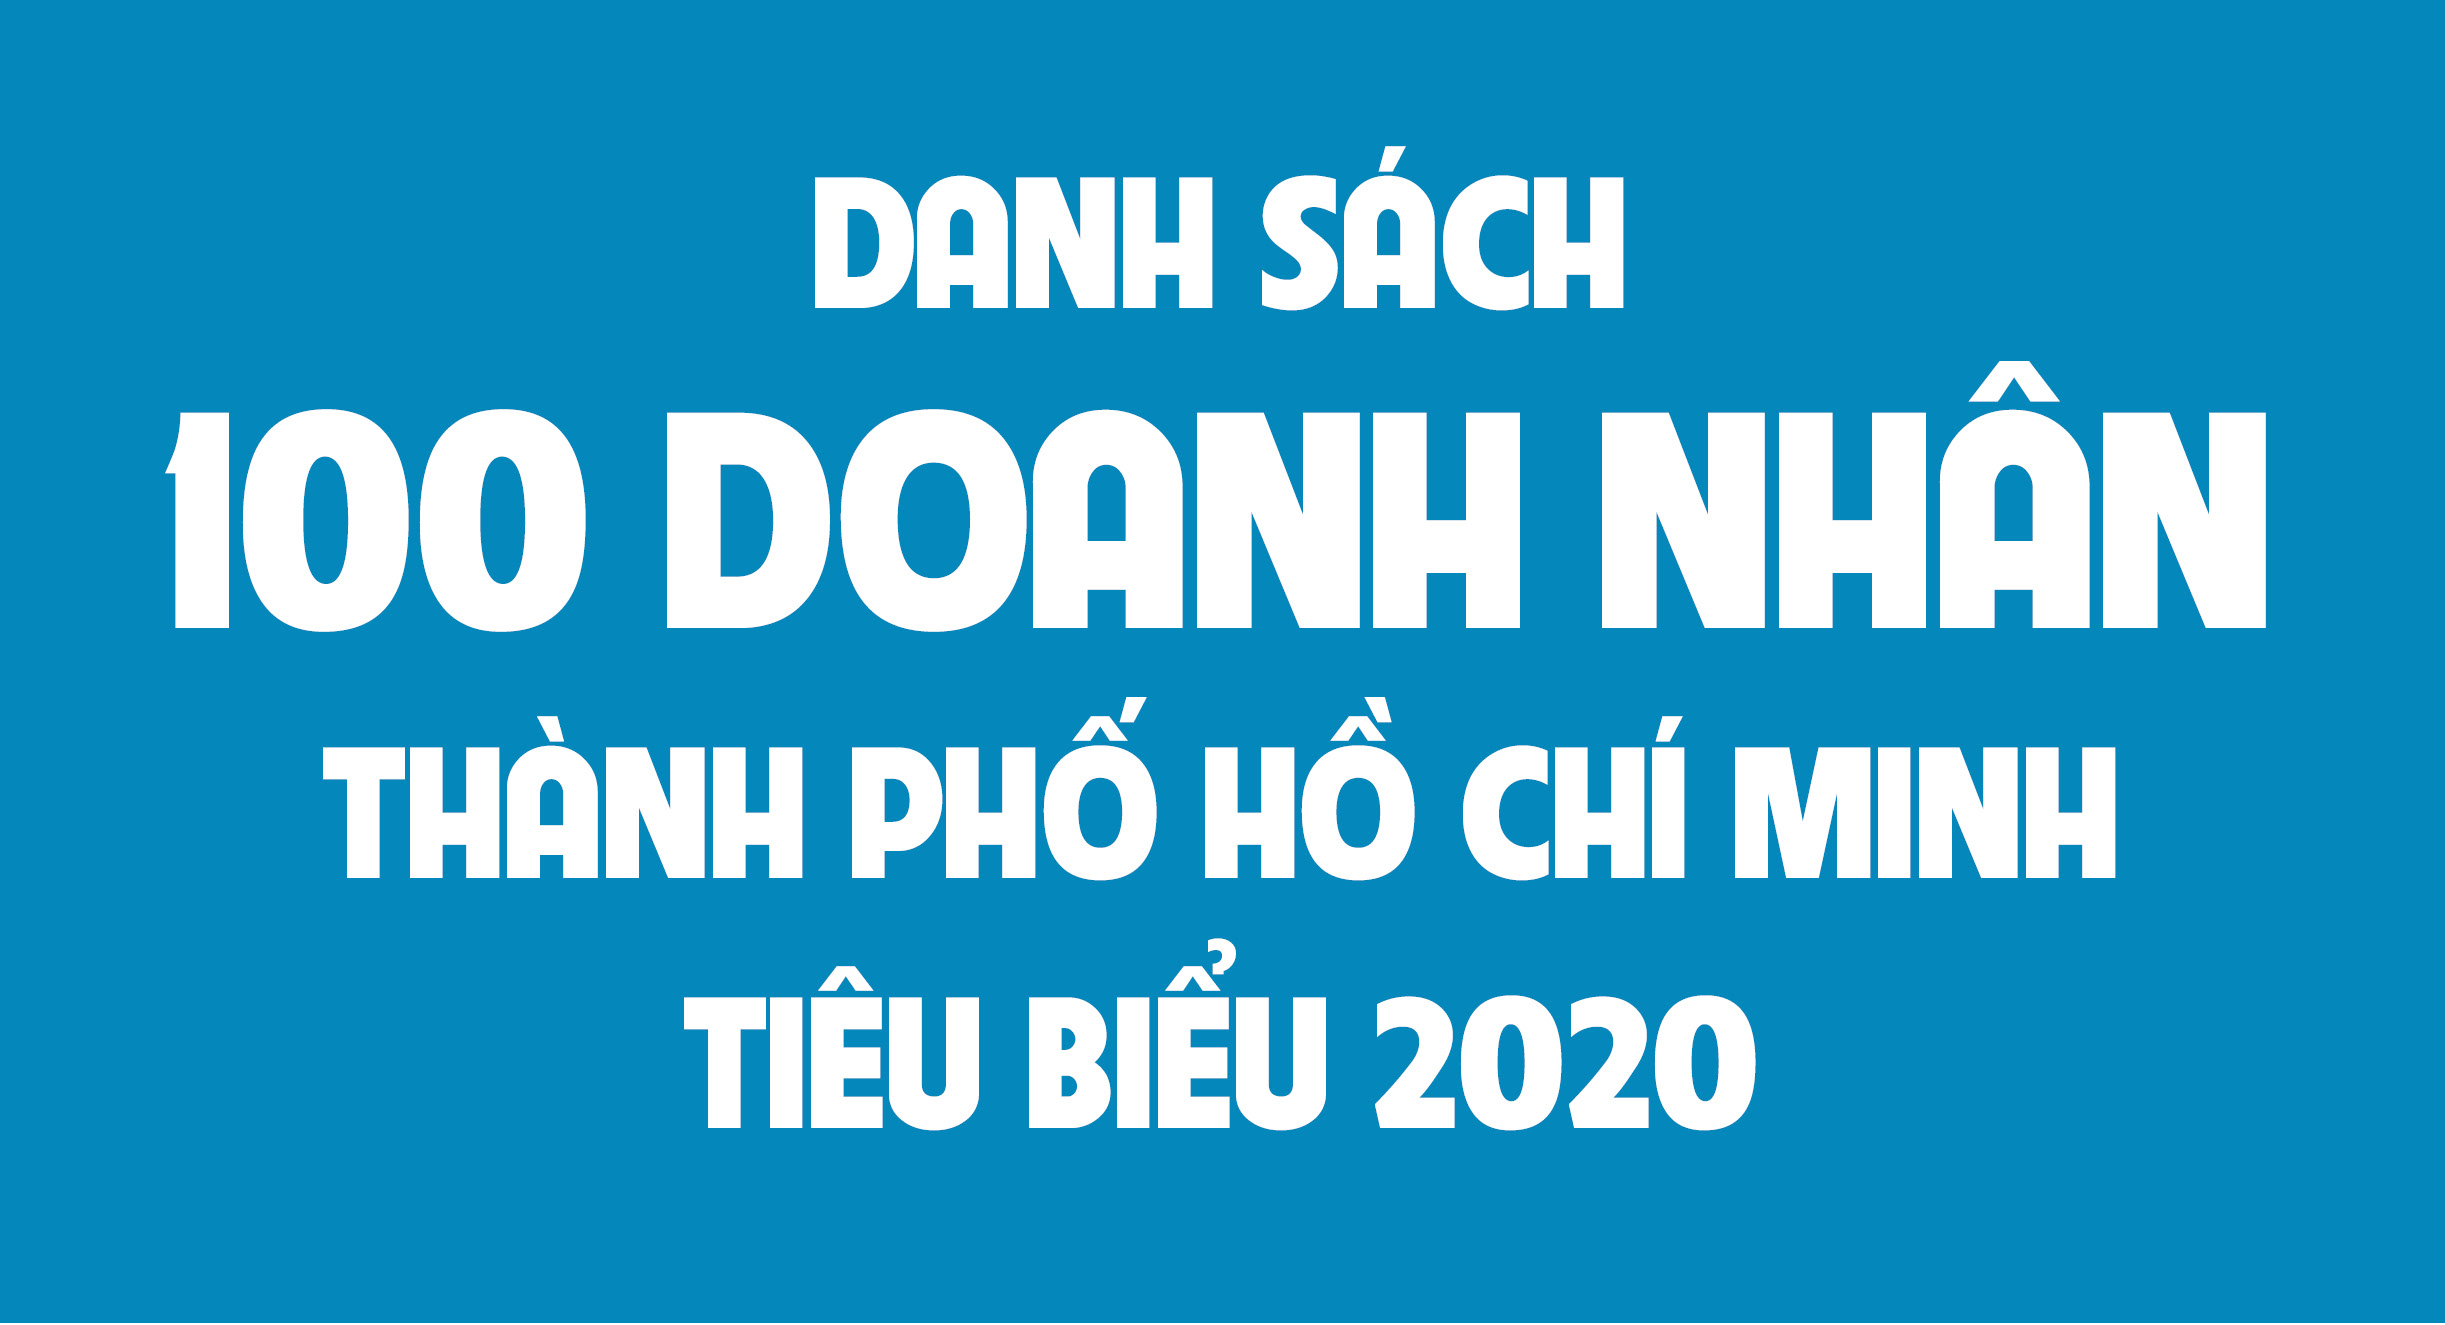 Danh sách 100 Doanh nhân Thành phố Hồ Chí Minh tiêu biểu 2020